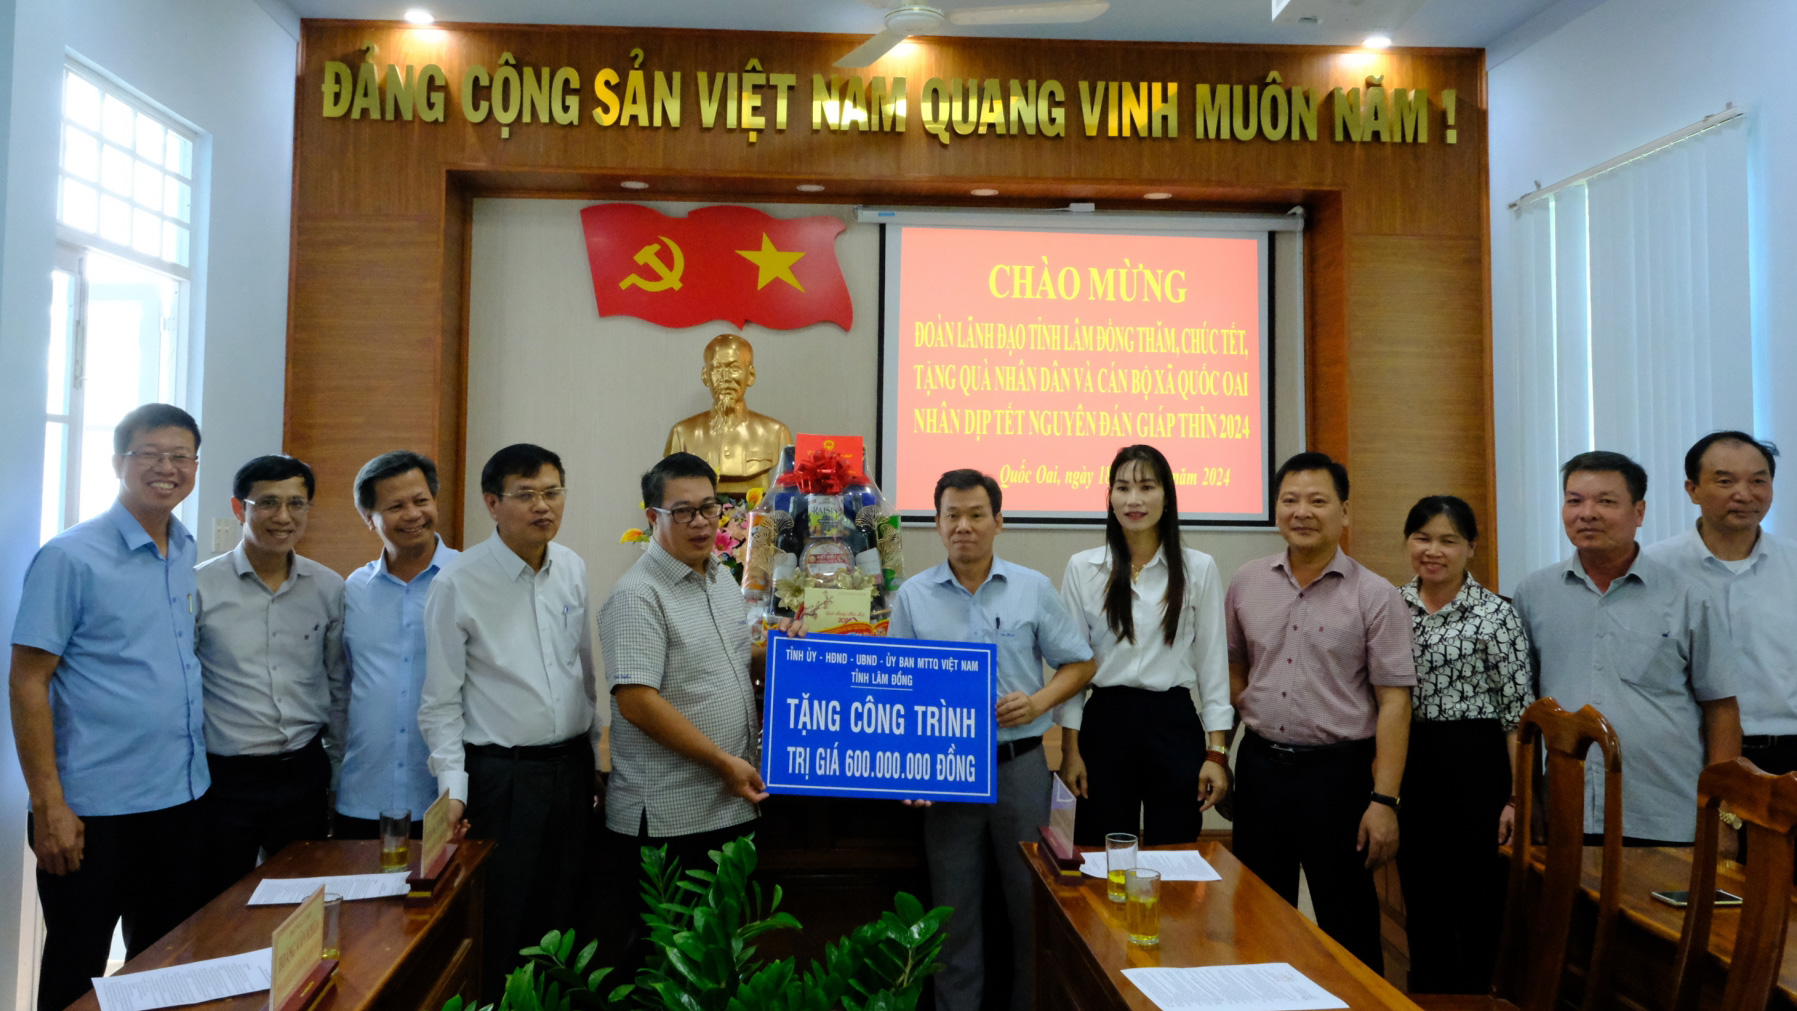 Đồng chí Nguyễn Ngọc Phúc tặng quà Tết và trao tặng công trình trị giá 600 triệu đồng cho xã Quốc Oai